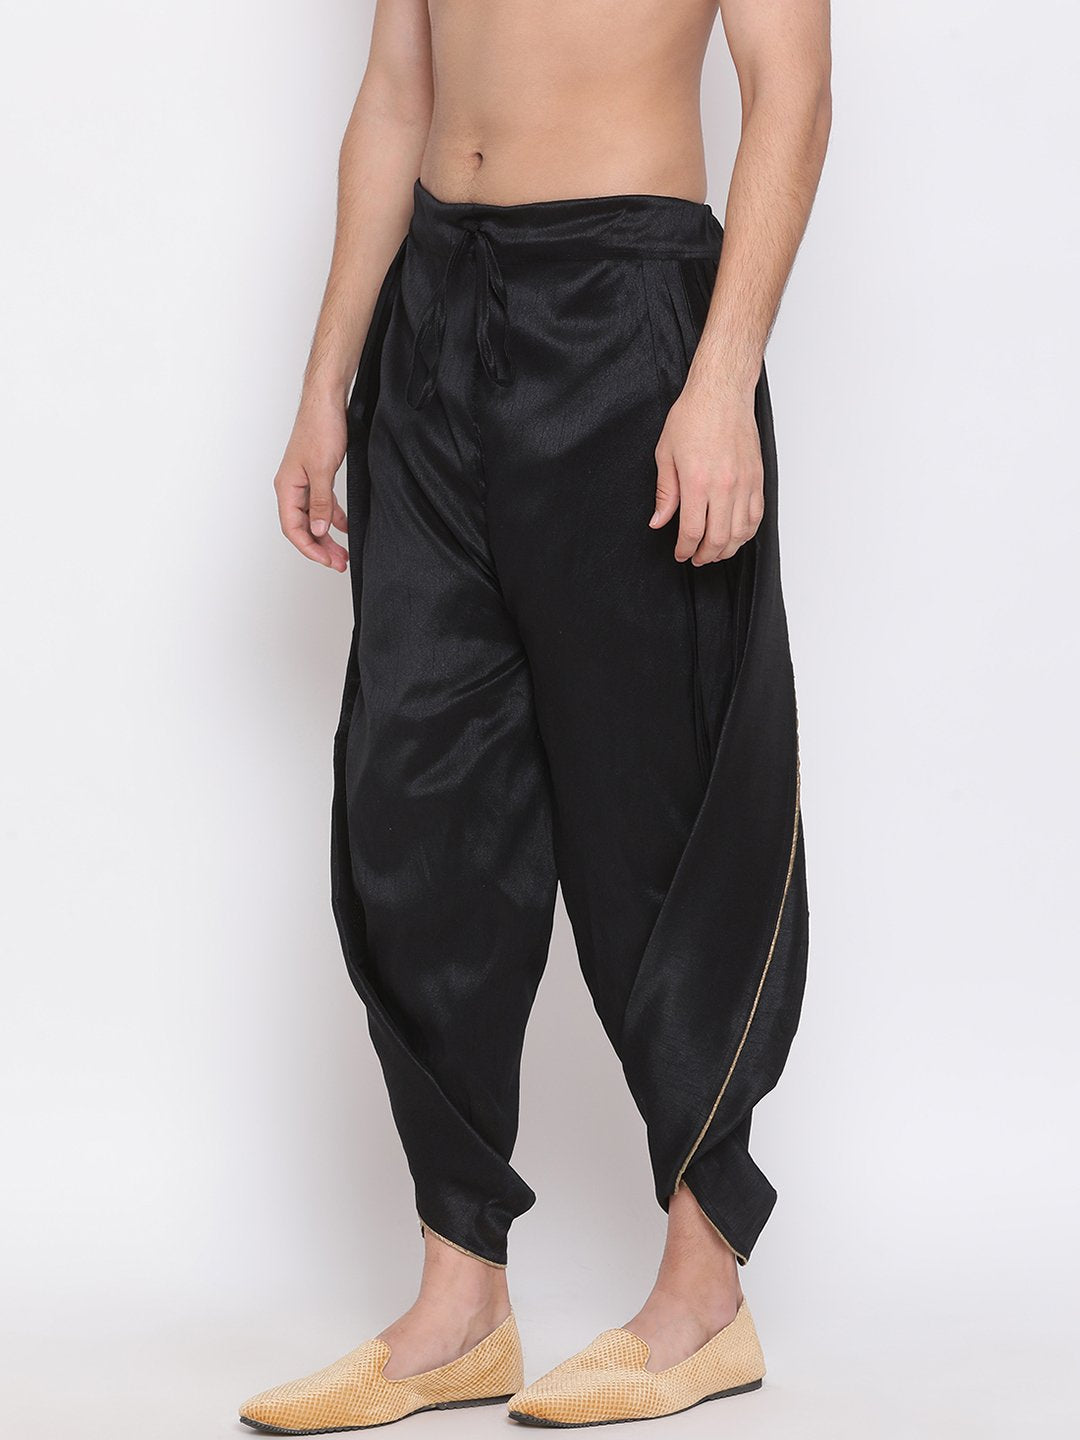 Buy Black Solid Dhoti Pants by Designer Ritu Kumar Online at Ogaan.com